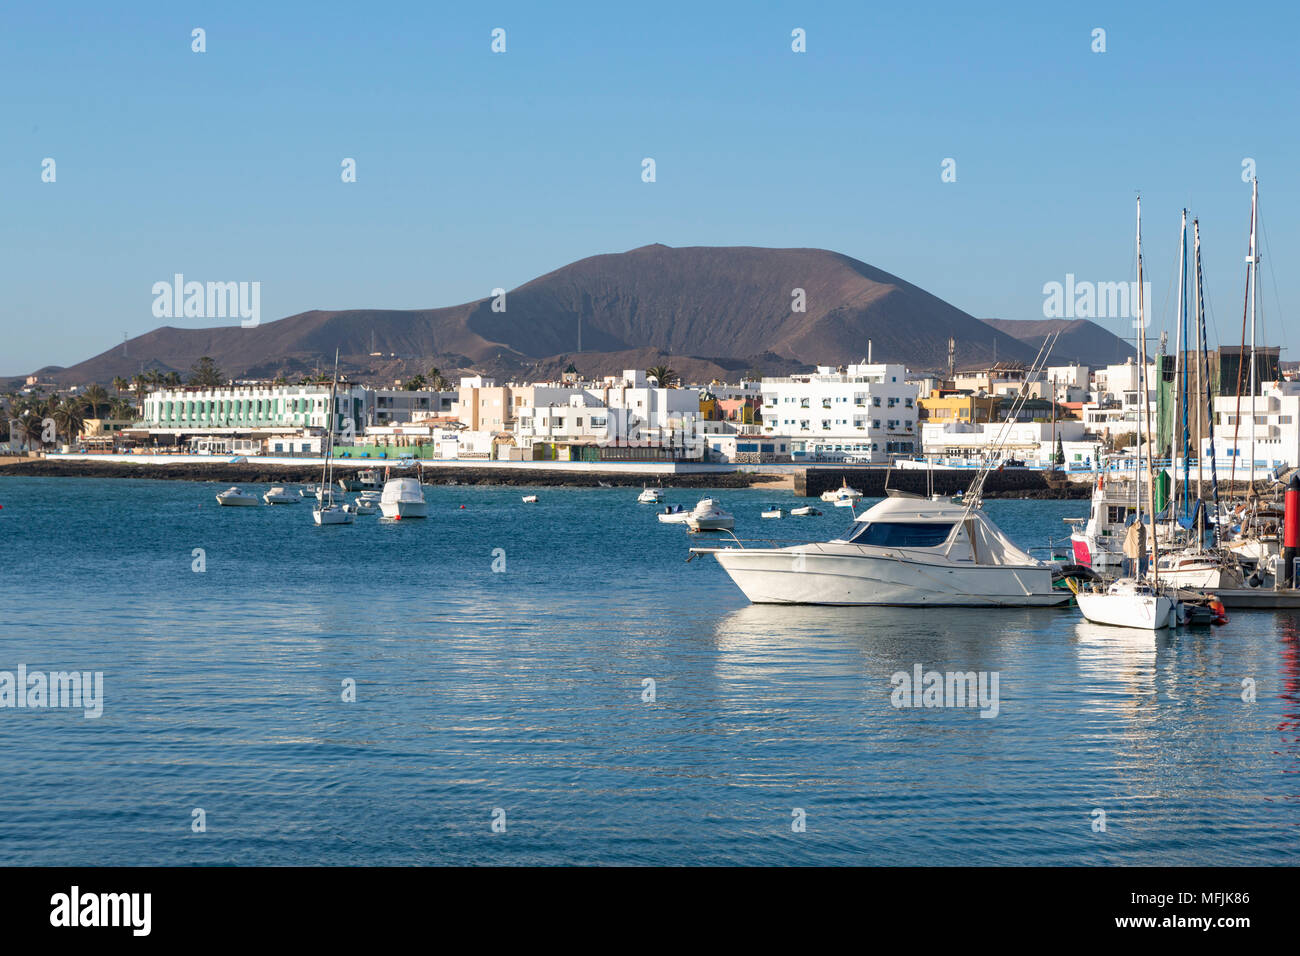 Der Hafen von Corralejo auf Fuerteventura mit einem Vulkan in der Ferne, Fuerteventura, Kanarische Inseln, Spanien, Atlantik, Europa Stockfoto